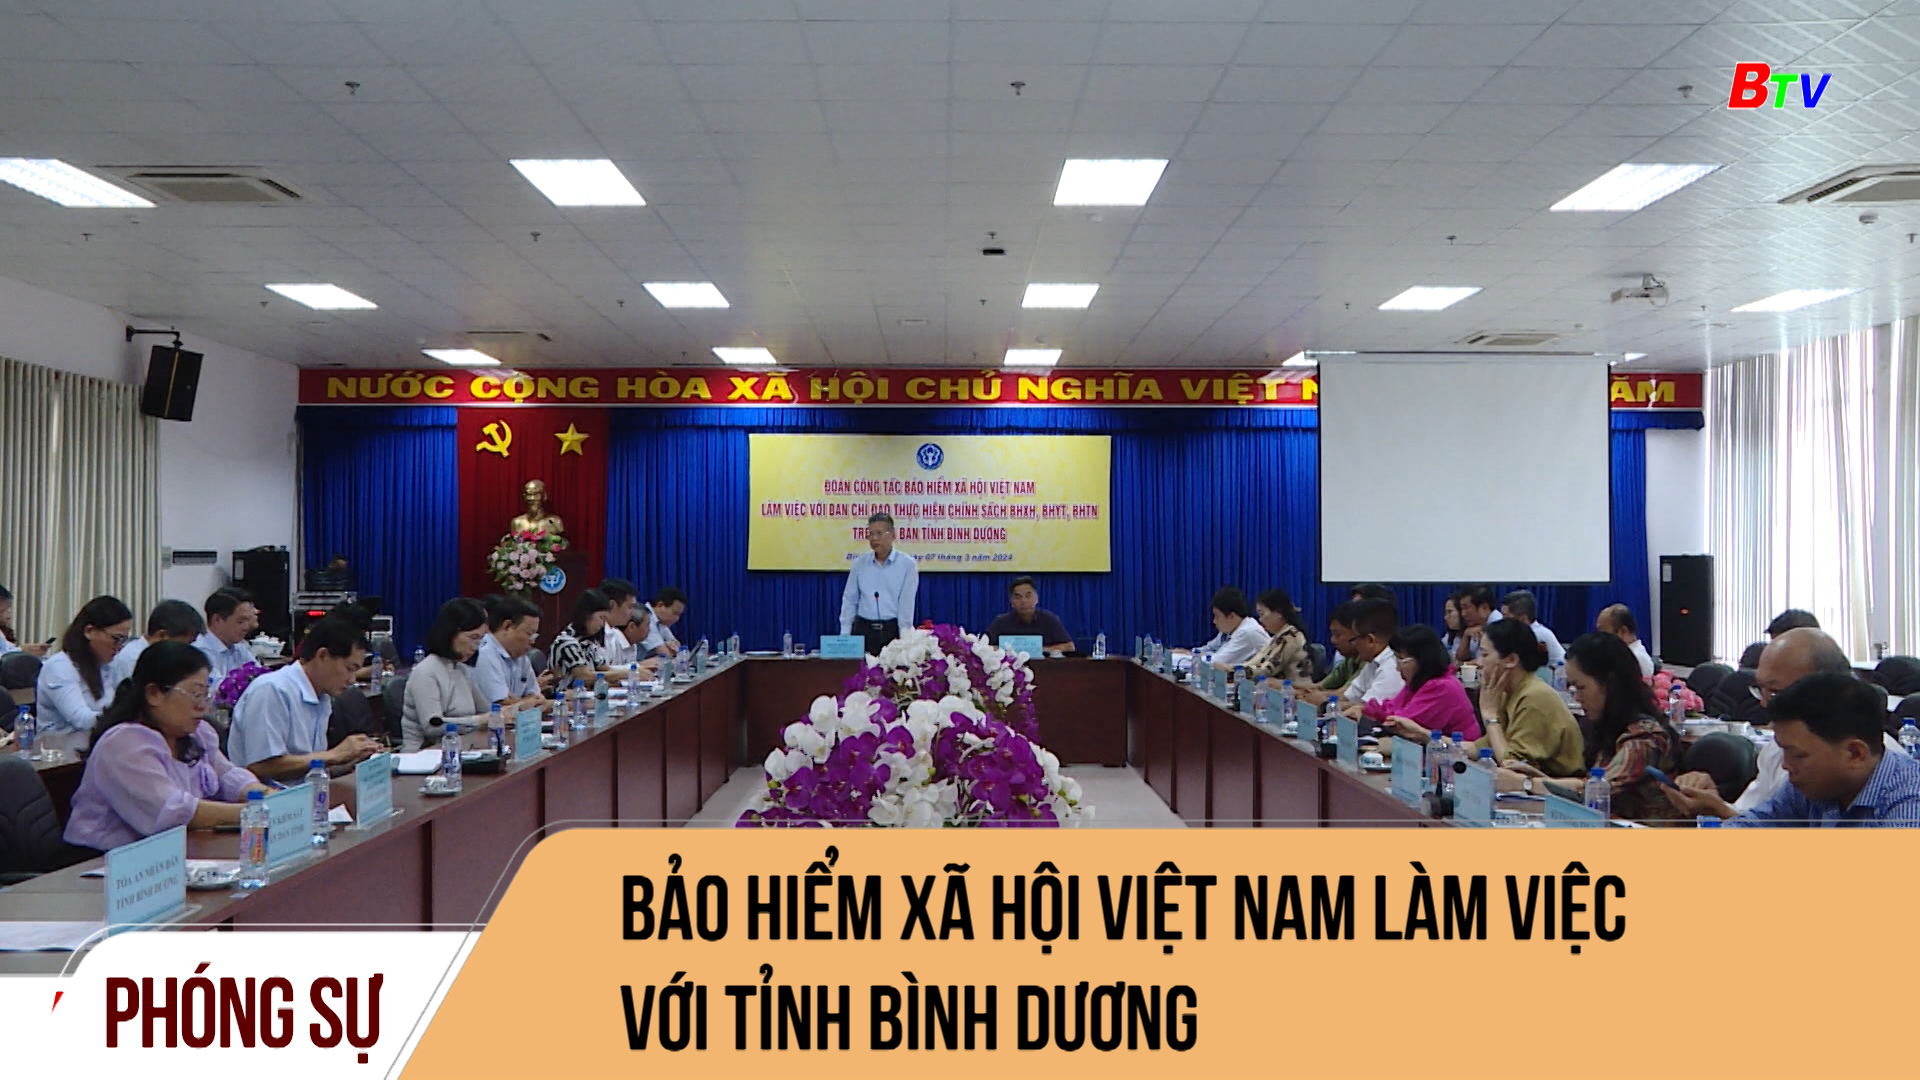 Bảo hiểm xã hội Việt Nam làm việc với tỉnh Bình Dương	